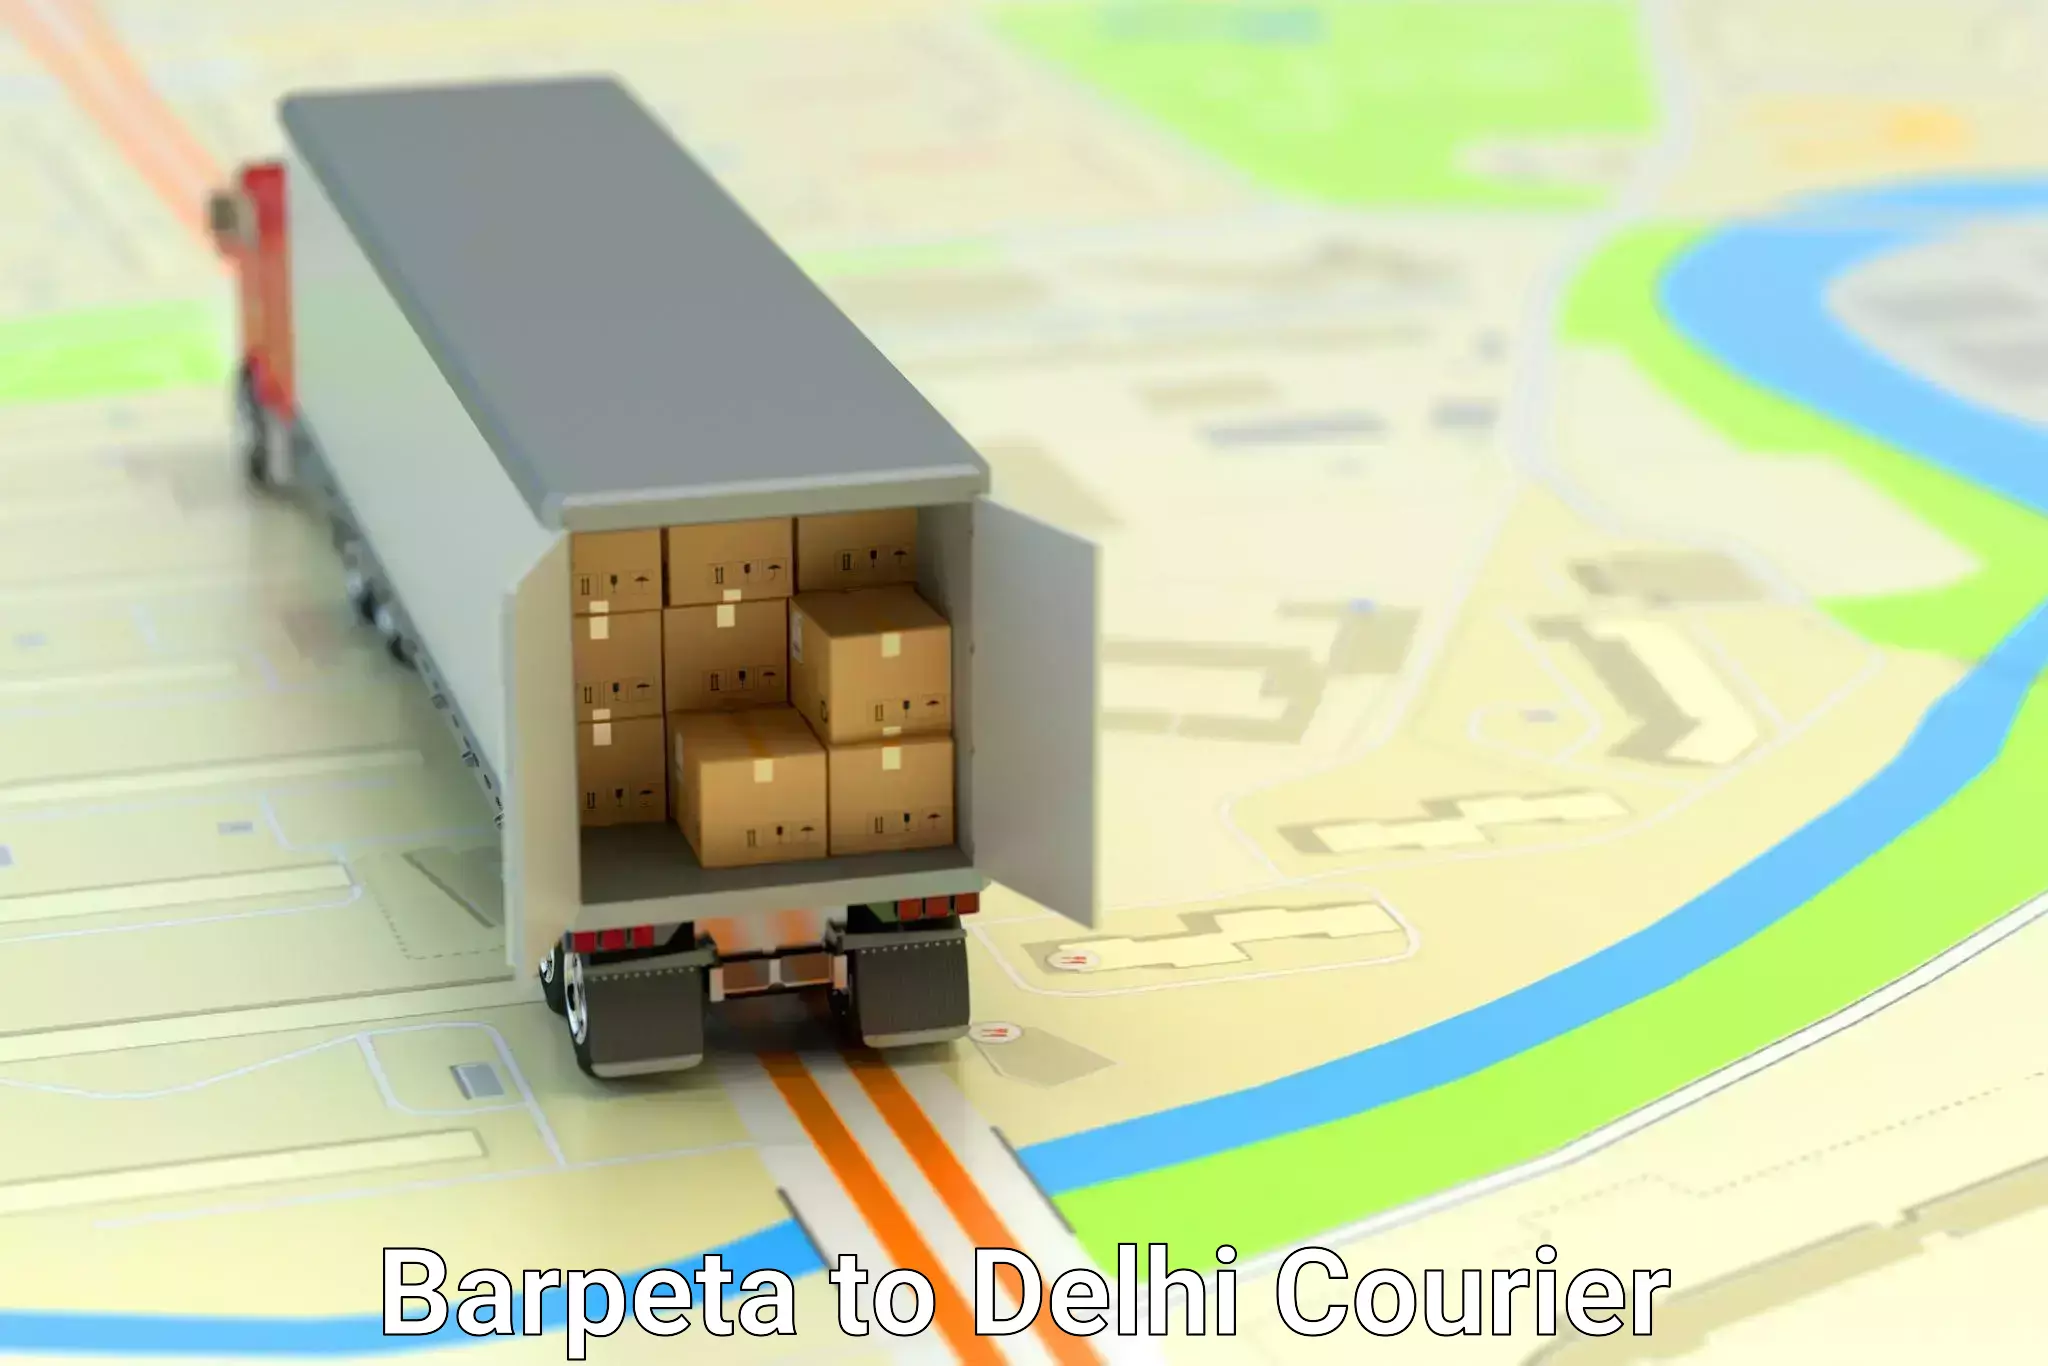 Customer-oriented courier services Barpeta to Sarojini Nagar